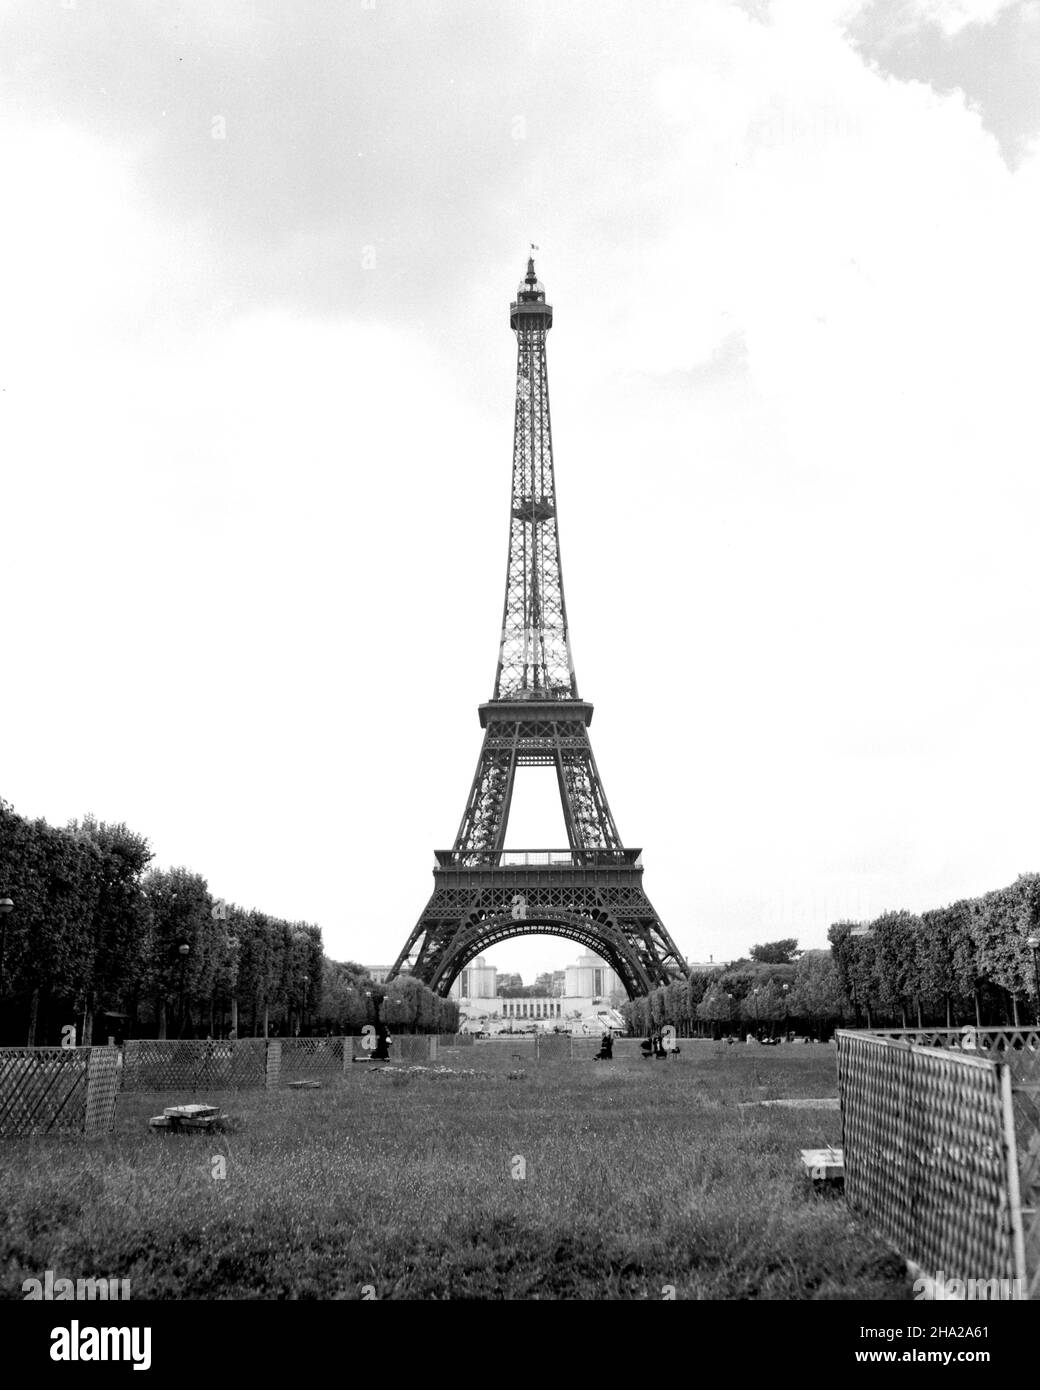 Vue en hauteur de la Tour Eiffel prise du champ de Mars.La position de la caméra est dans le parc herbeux avec une vue centrée vers le nord-ouest de la tour et au-delà.Au premier plan, il y a de l'herbe épaisse et des taches de fleurs.Il y a des sections dispersées de clôture en treillis debout et très peu d'utilisateurs de parc entre la caméra et la tour elle-même.Un drapeau de la France souffle à droite d'un poteau au sommet de la tour.Les arbres dans le feuillage apparent du printemps sont alignés des deux côtés de la photo.Le Palais de Chaillot est clairement visible au loin à travers les pieds de la tour. Banque D'Images